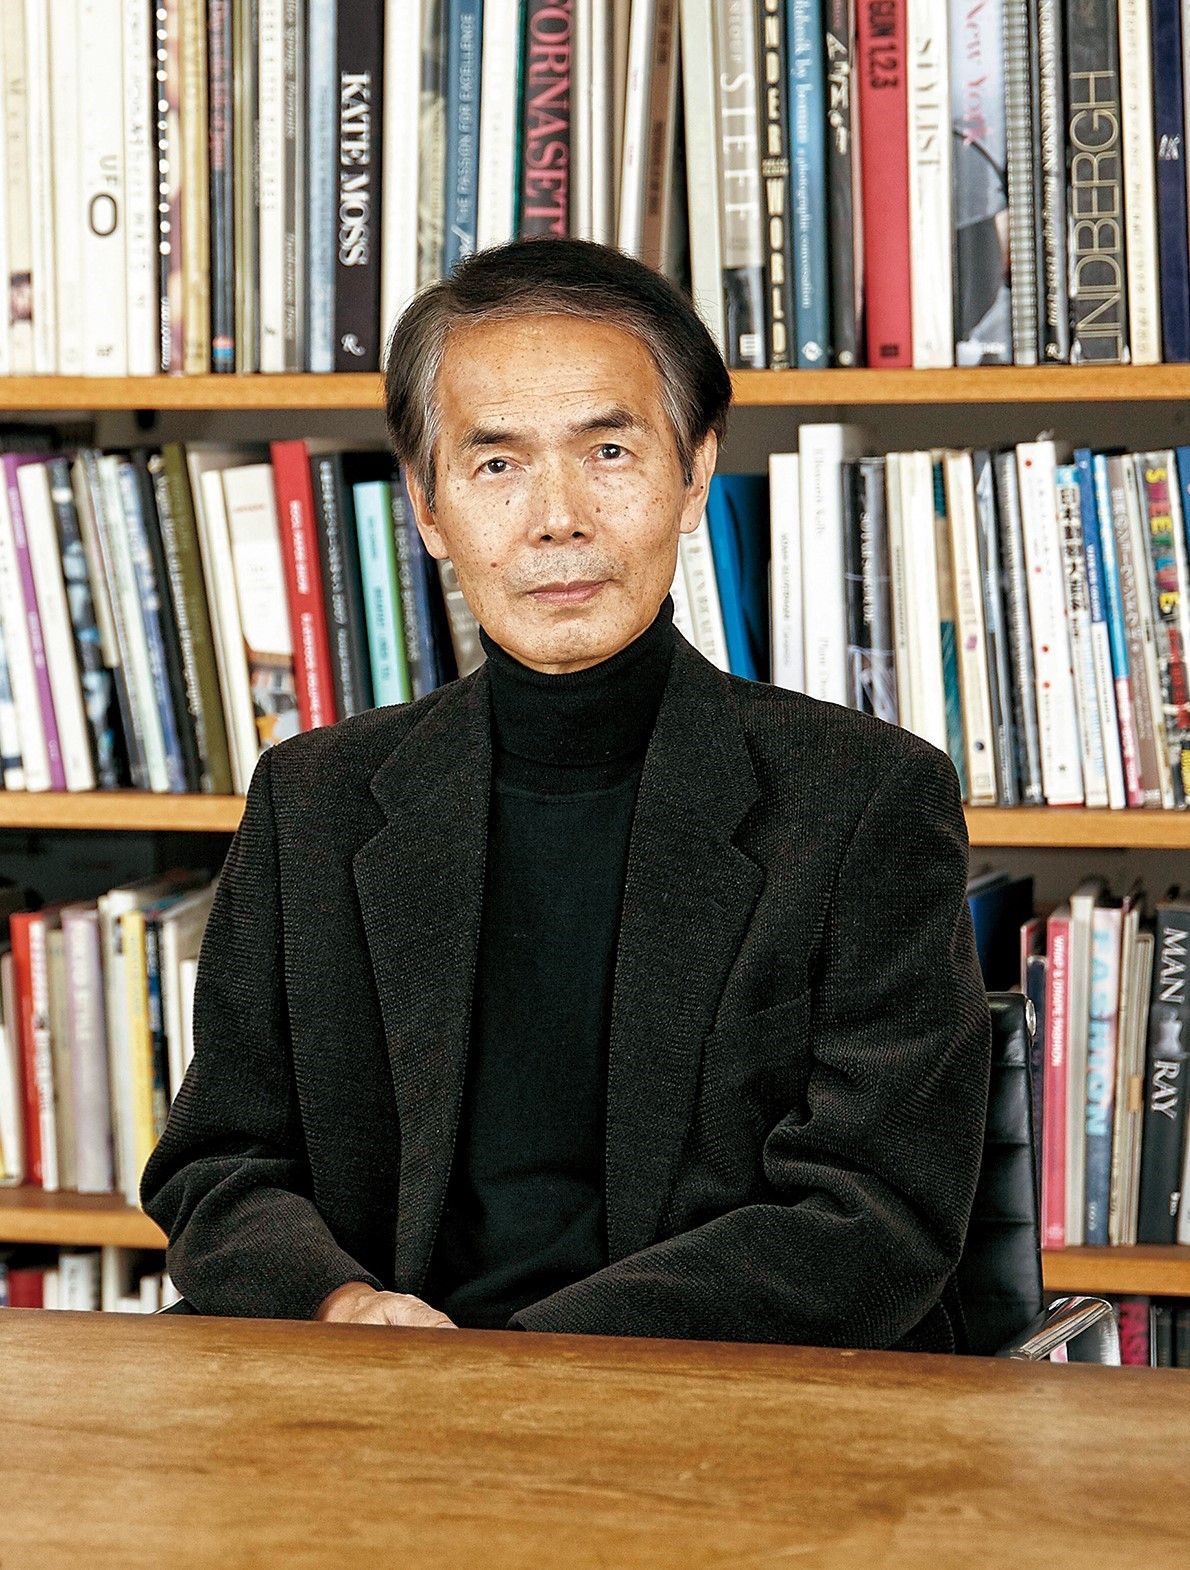 沢木耕太郎 50歳で世界を旅し、数ヵ月ぶりに帰国。本を読まない日々が 